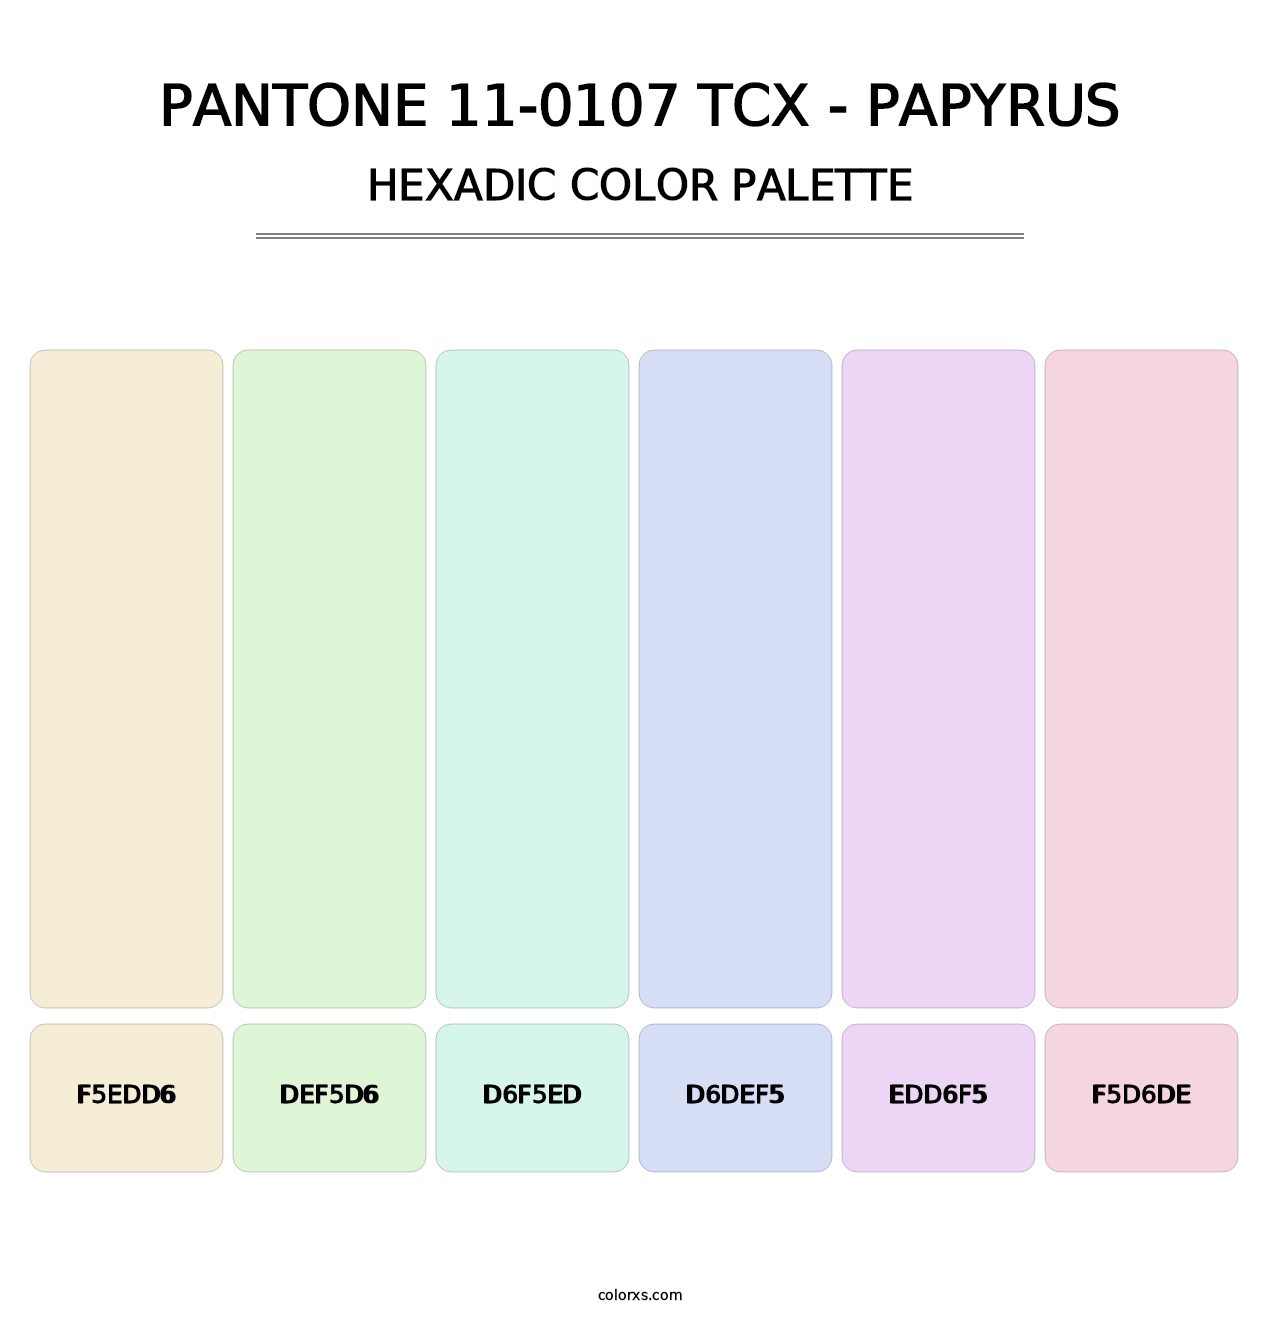 PANTONE 11-0107 TCX - Papyrus - Hexadic Color Palette